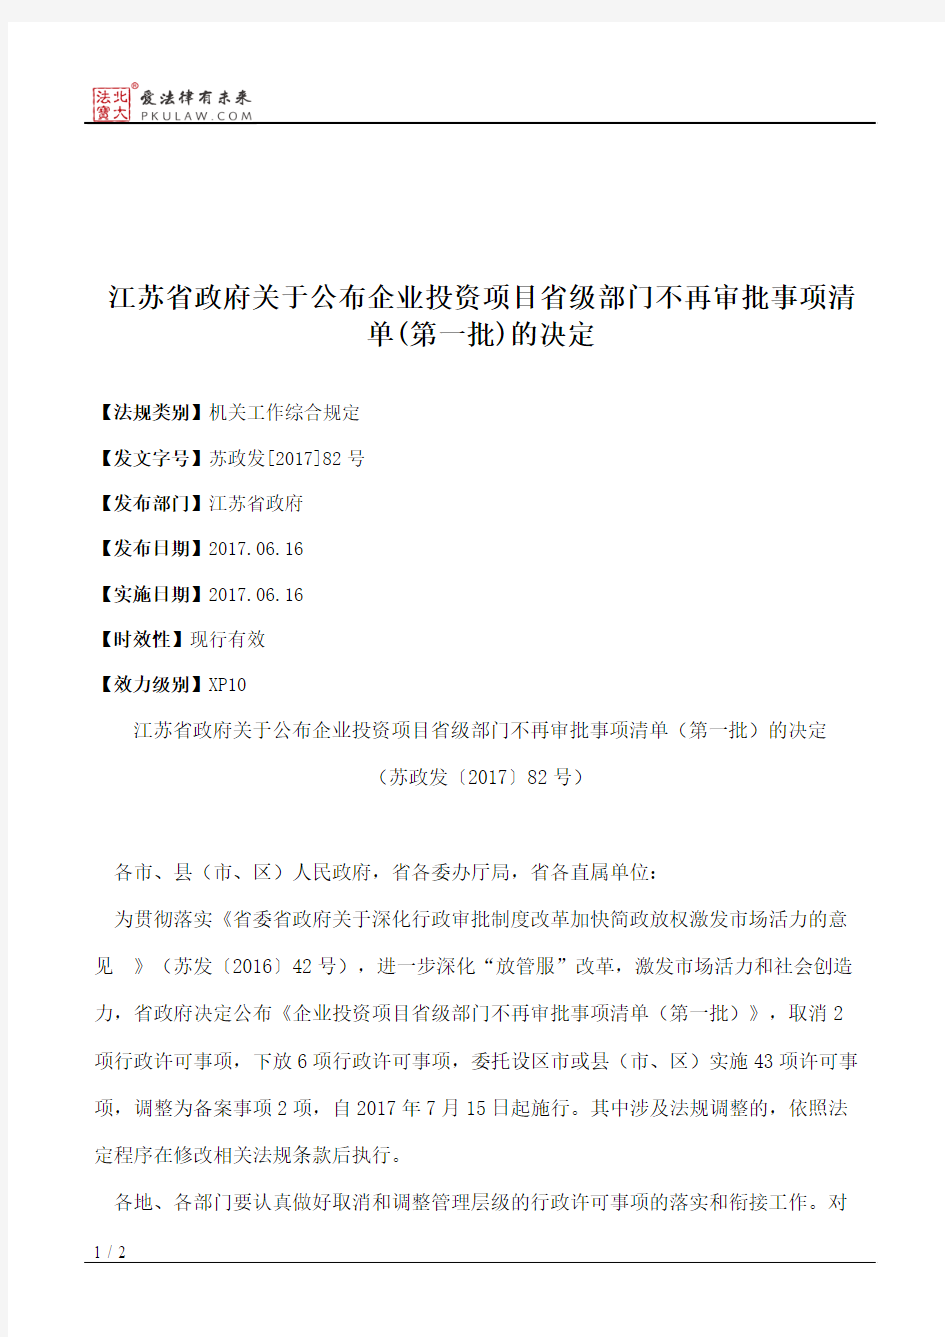 江苏省政府关于公布企业投资项目省级部门不再审批事项清单(第一